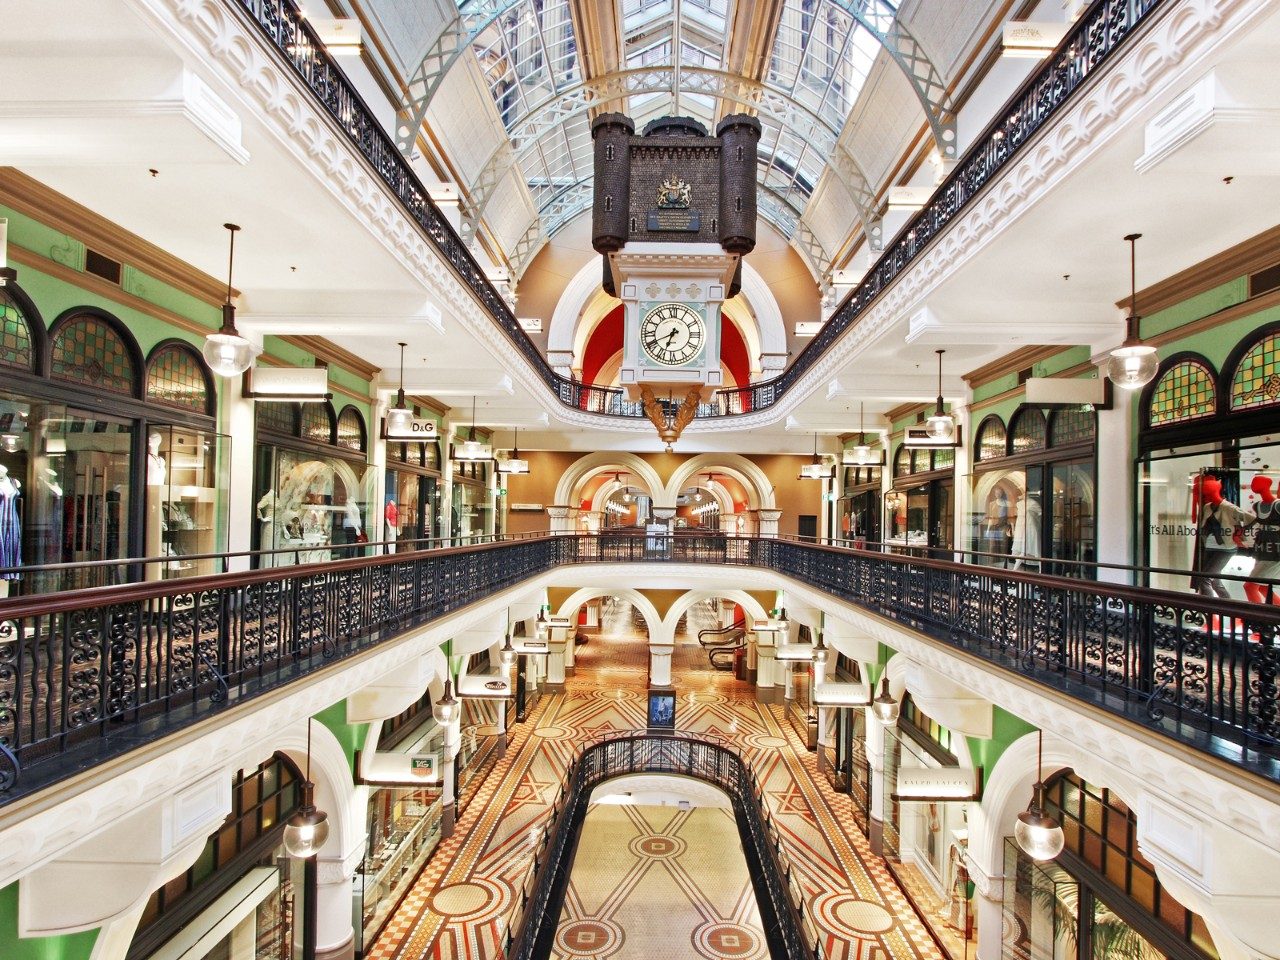 Tòa nhà phục vụ bán lẻ quy mô lớn từ thời Liên bang Victoria ở Úc